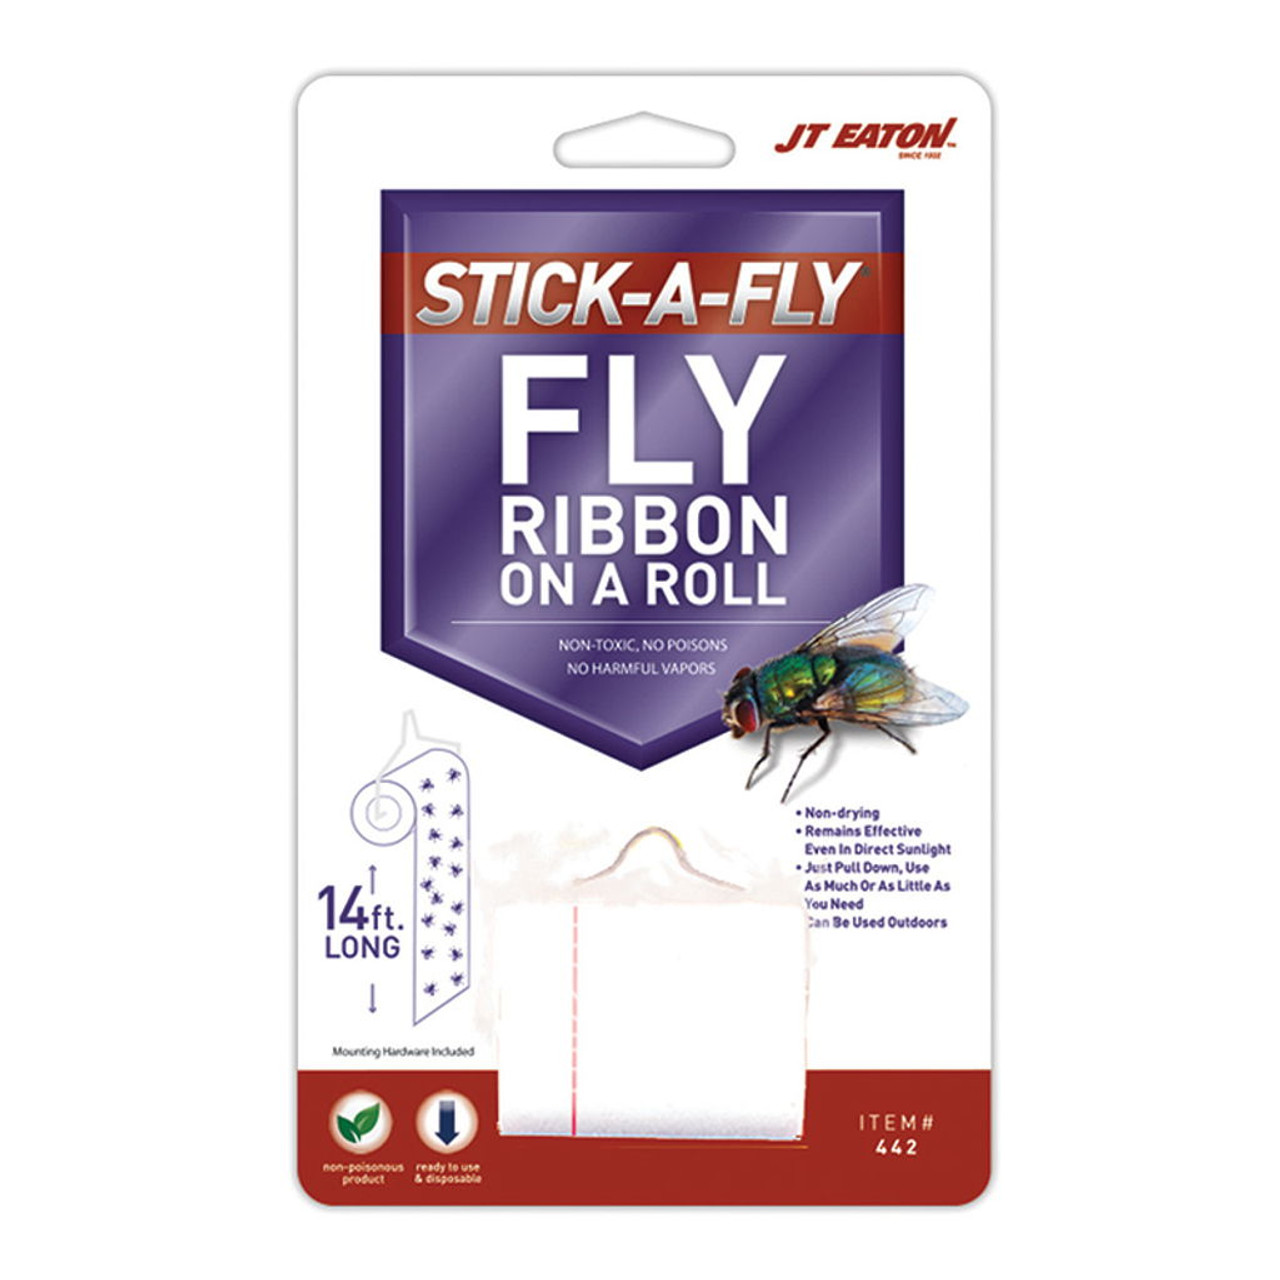 Starbar Fly Stik Junior Sticky Fly Trap- Fly Control